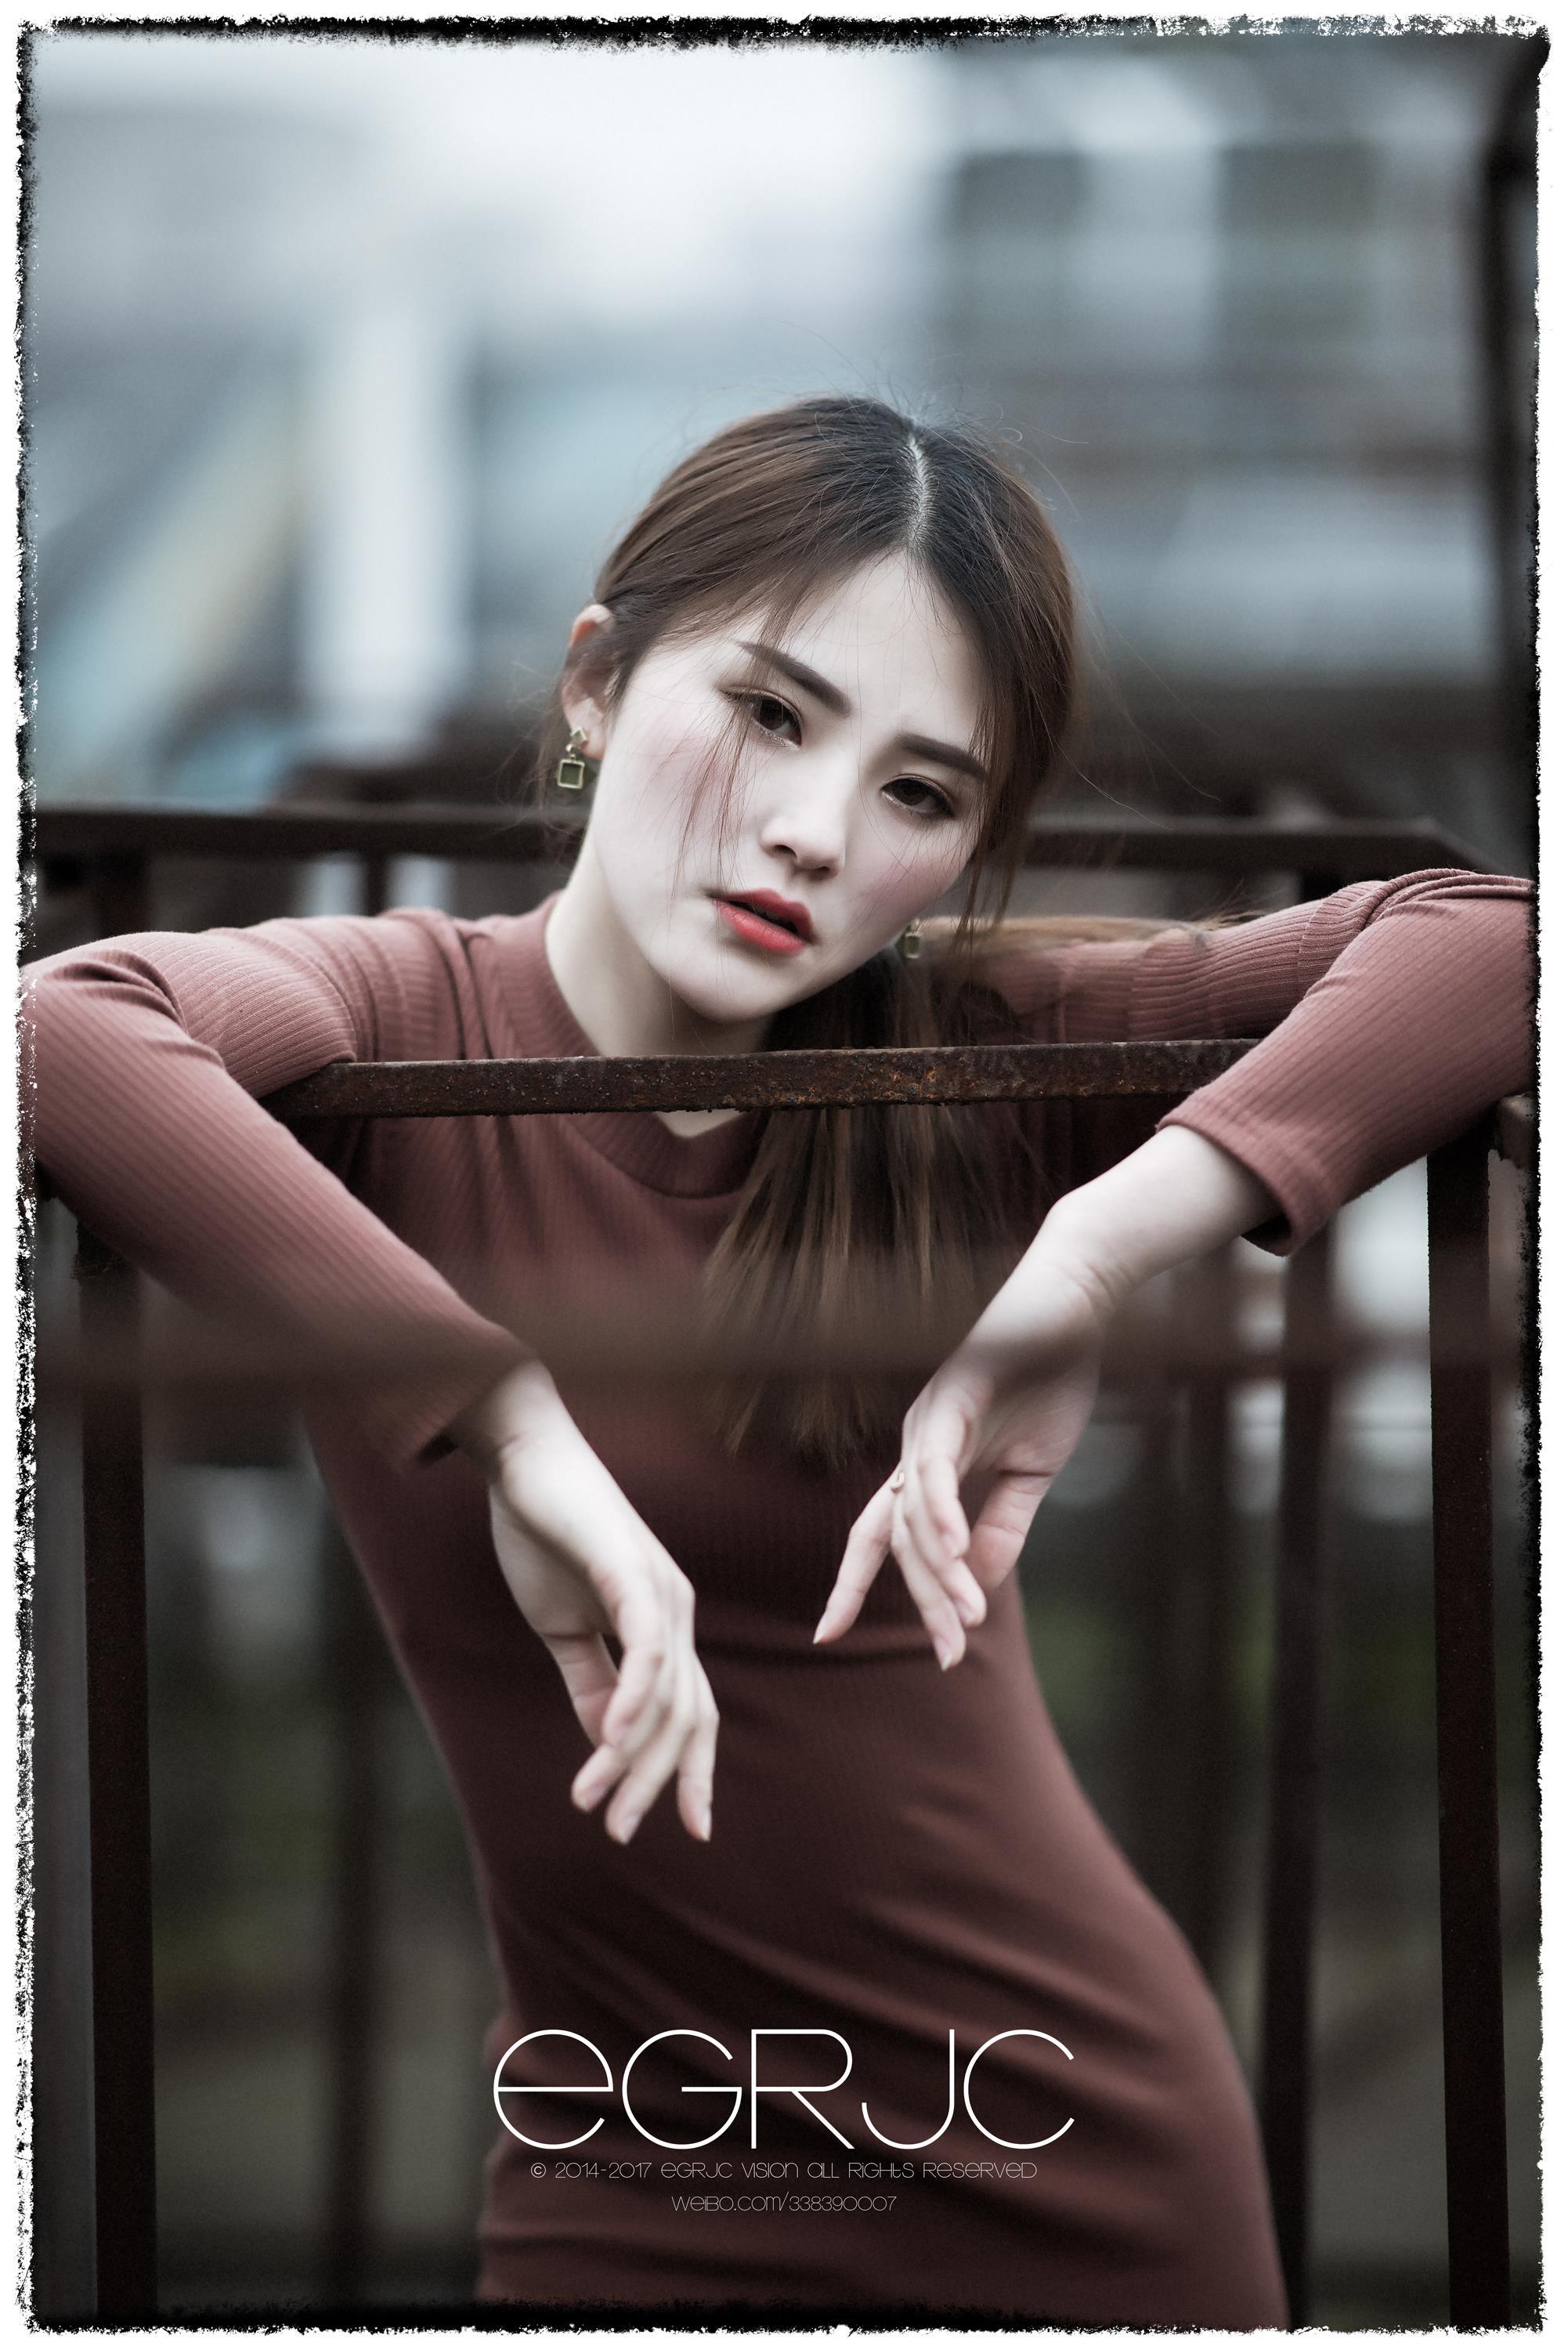 微博女神范 重庆模特 蔡亚楠Nan 街拍 棕色连身长裙优雅写真,